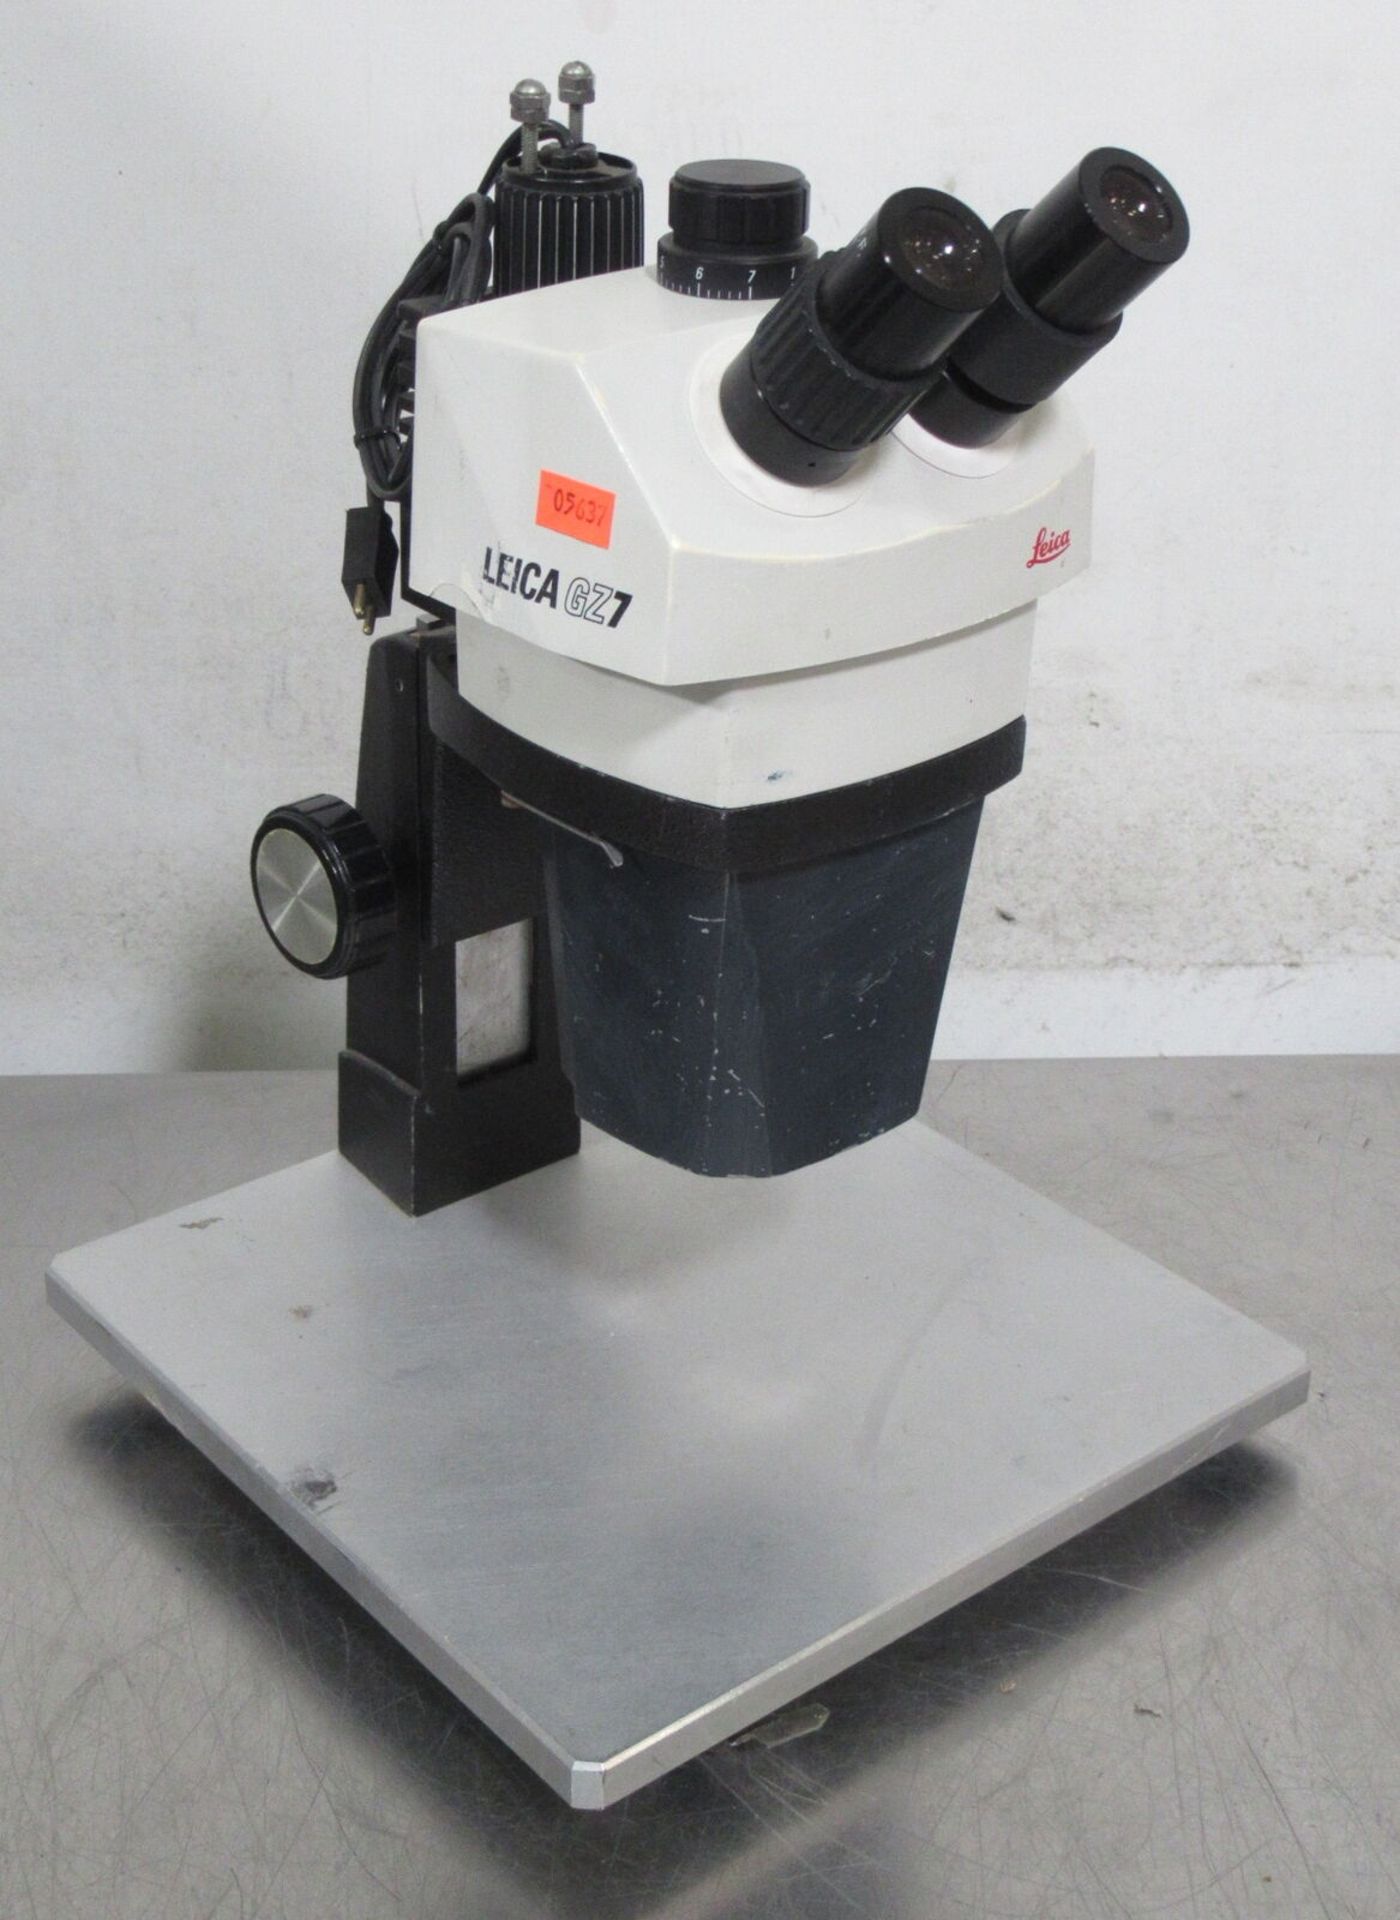 Leica GZ7 Stereo Zoom Microscope w/ Stand, 10X WF Eyepieces, Illuminator - Gilroy